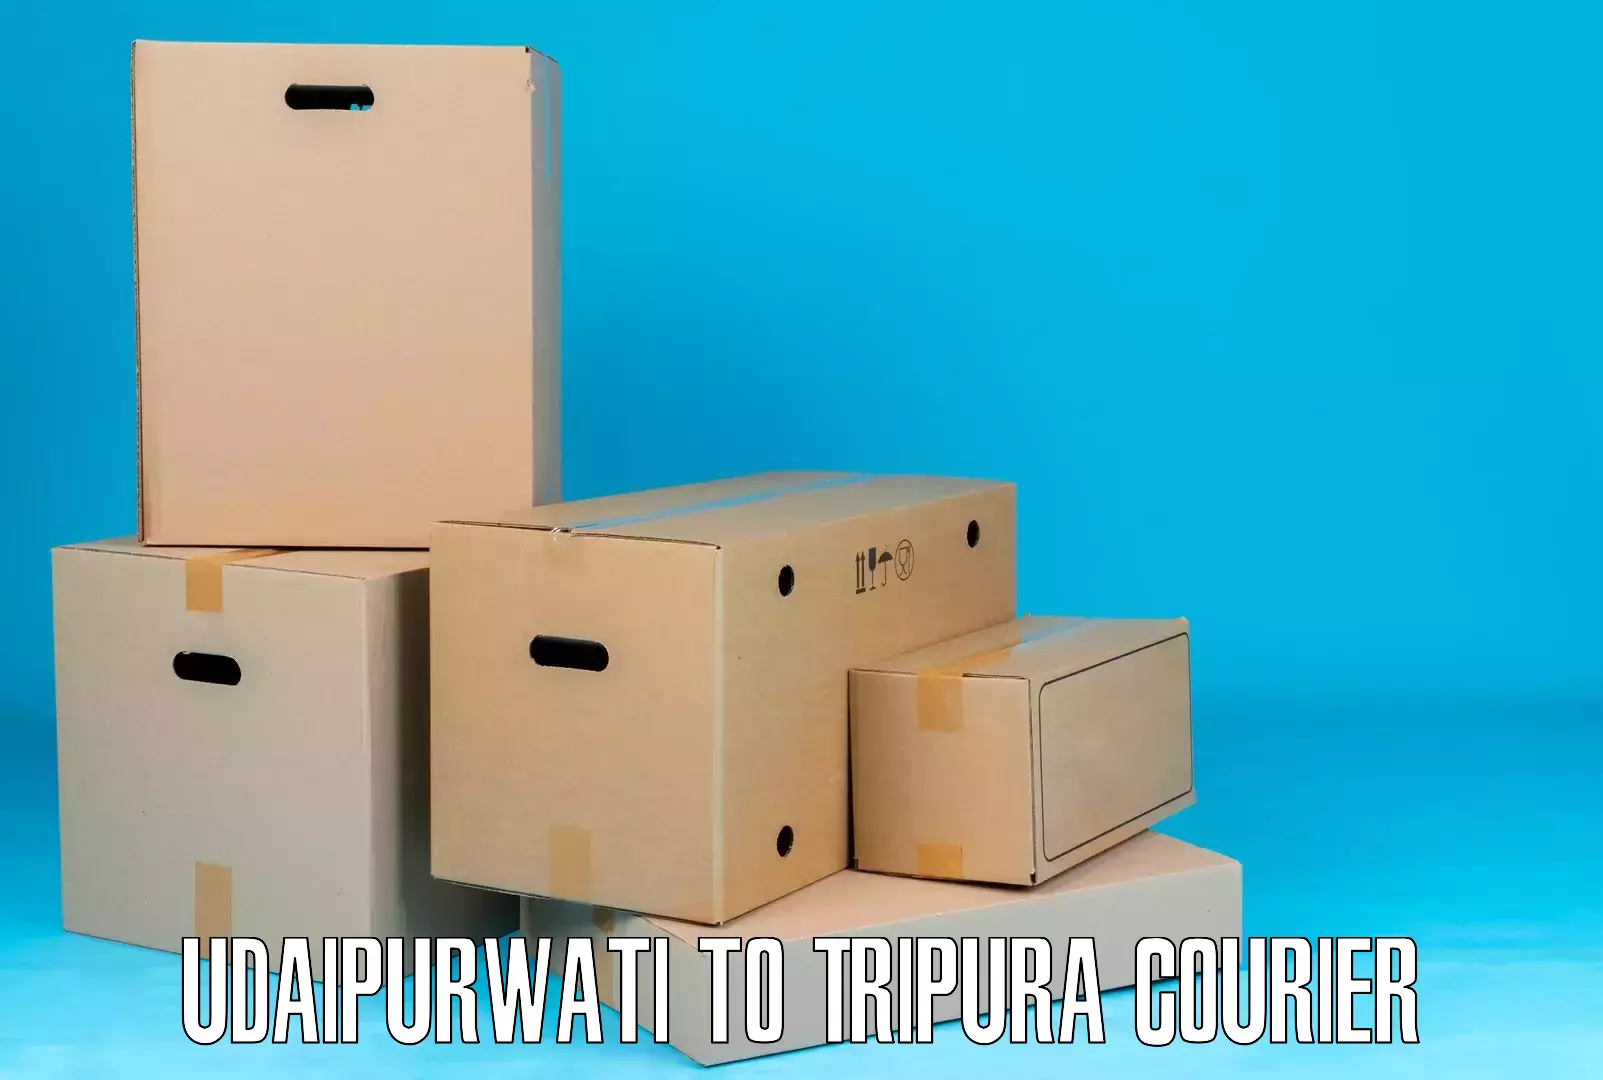 Efficient logistics management Udaipurwati to Manughat